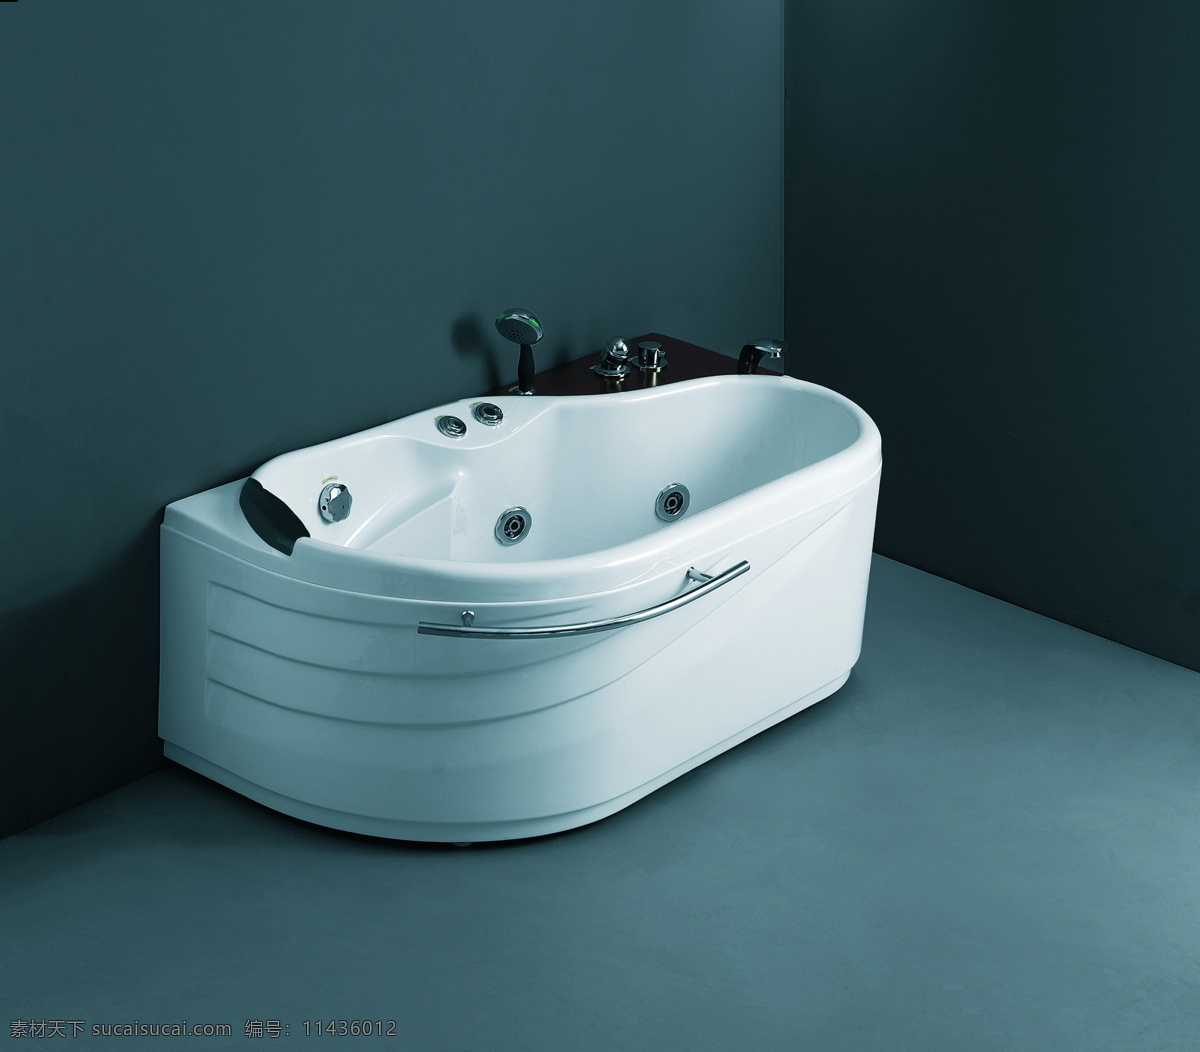 卫浴 浴缸 建筑园林 摄影图库 室内摄影 室内效果 水龙头 卫浴浴缸 装饰素材 室内设计